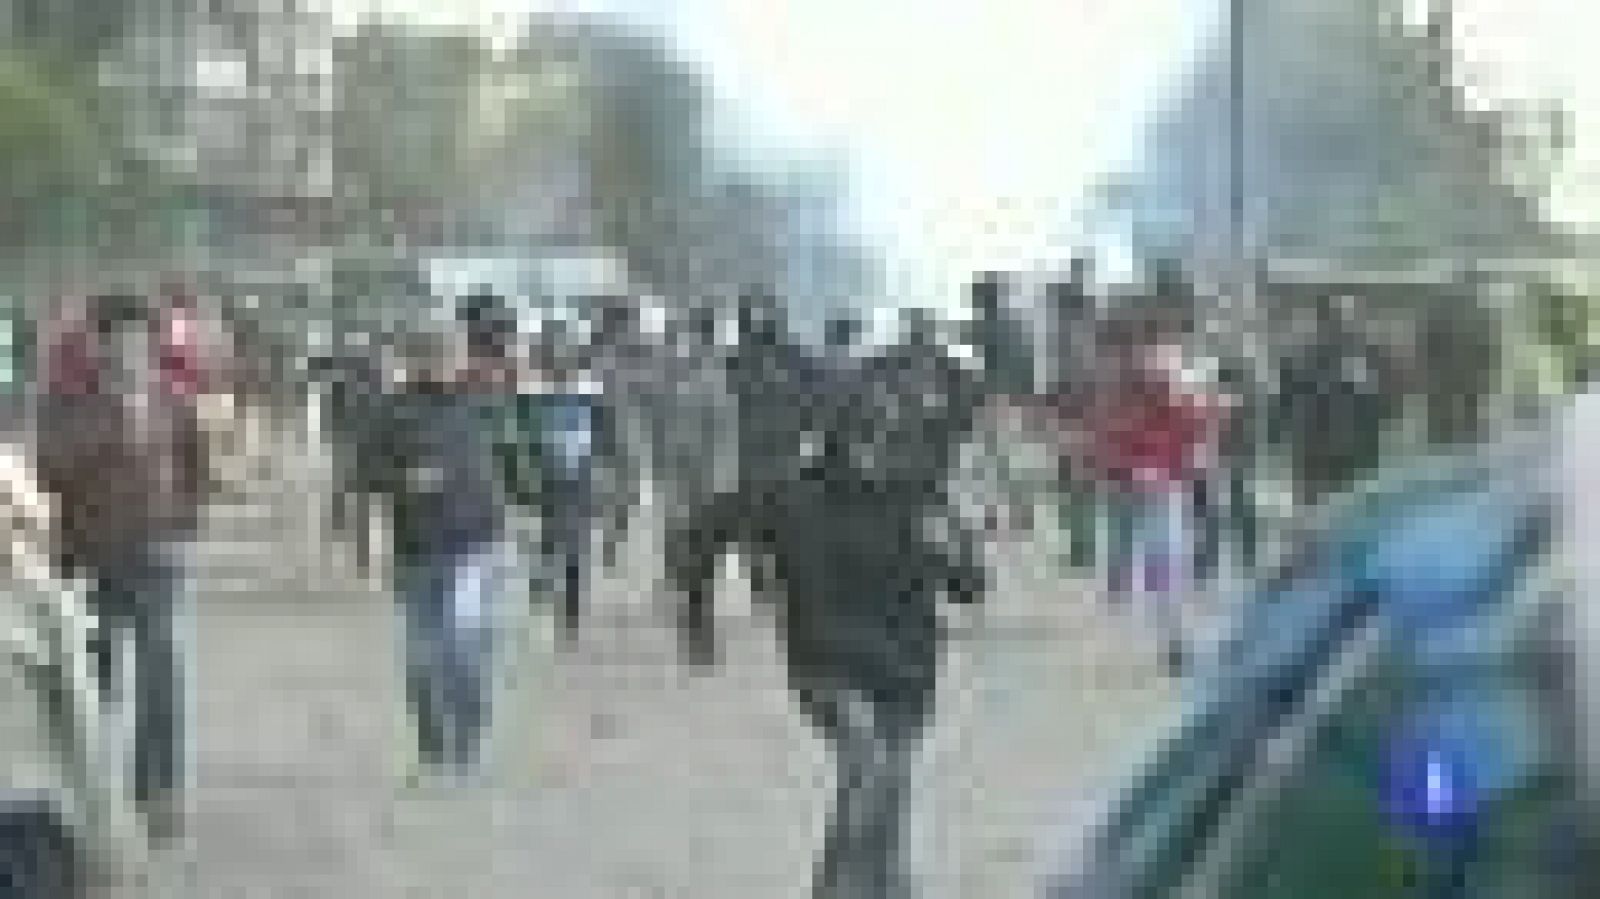  En Egipto continúan las protestas contra el gobierno por tercer día consecutivo. Esta mañana se han producido enfrentamientos en Alejandría y El Cairo entre manifestantes y policía. En Port Said miles de personas han asistido al entierro de las 33 personas que murieron ayer, y varias están heridas por disparos.